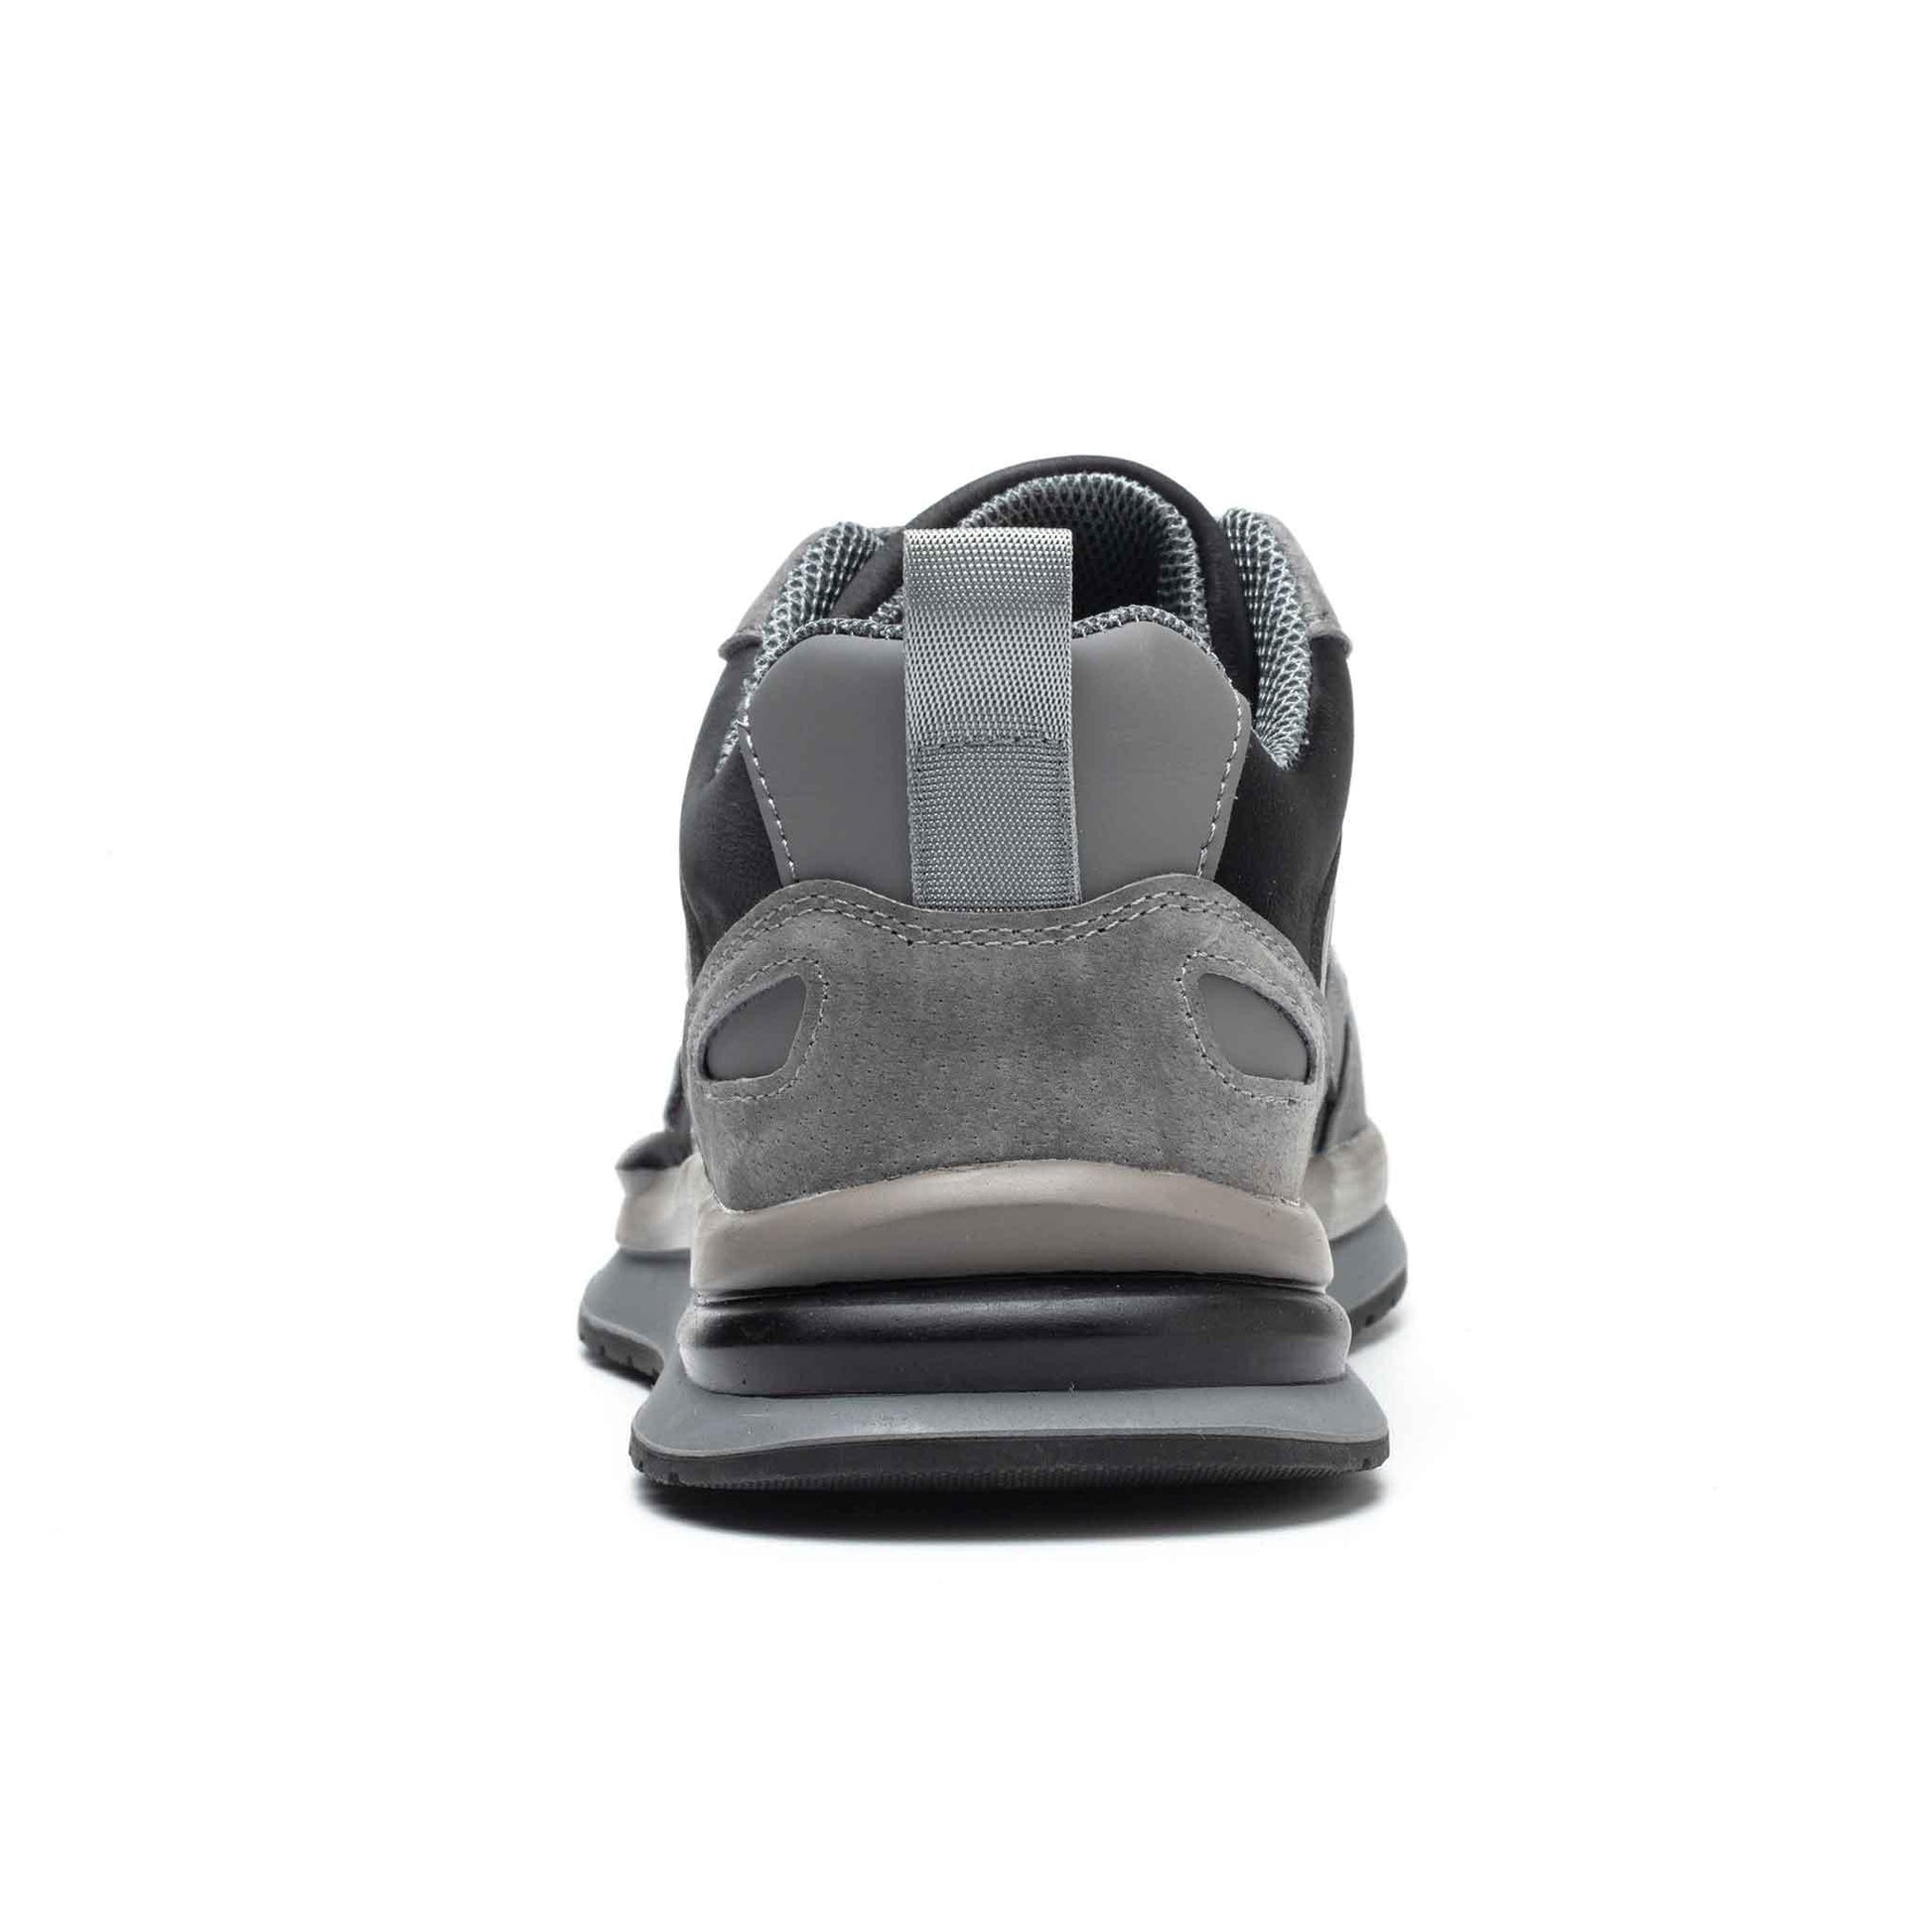 Women's Steel Toe Shoes - Waterproof | B204 - USINE PRO Footwear